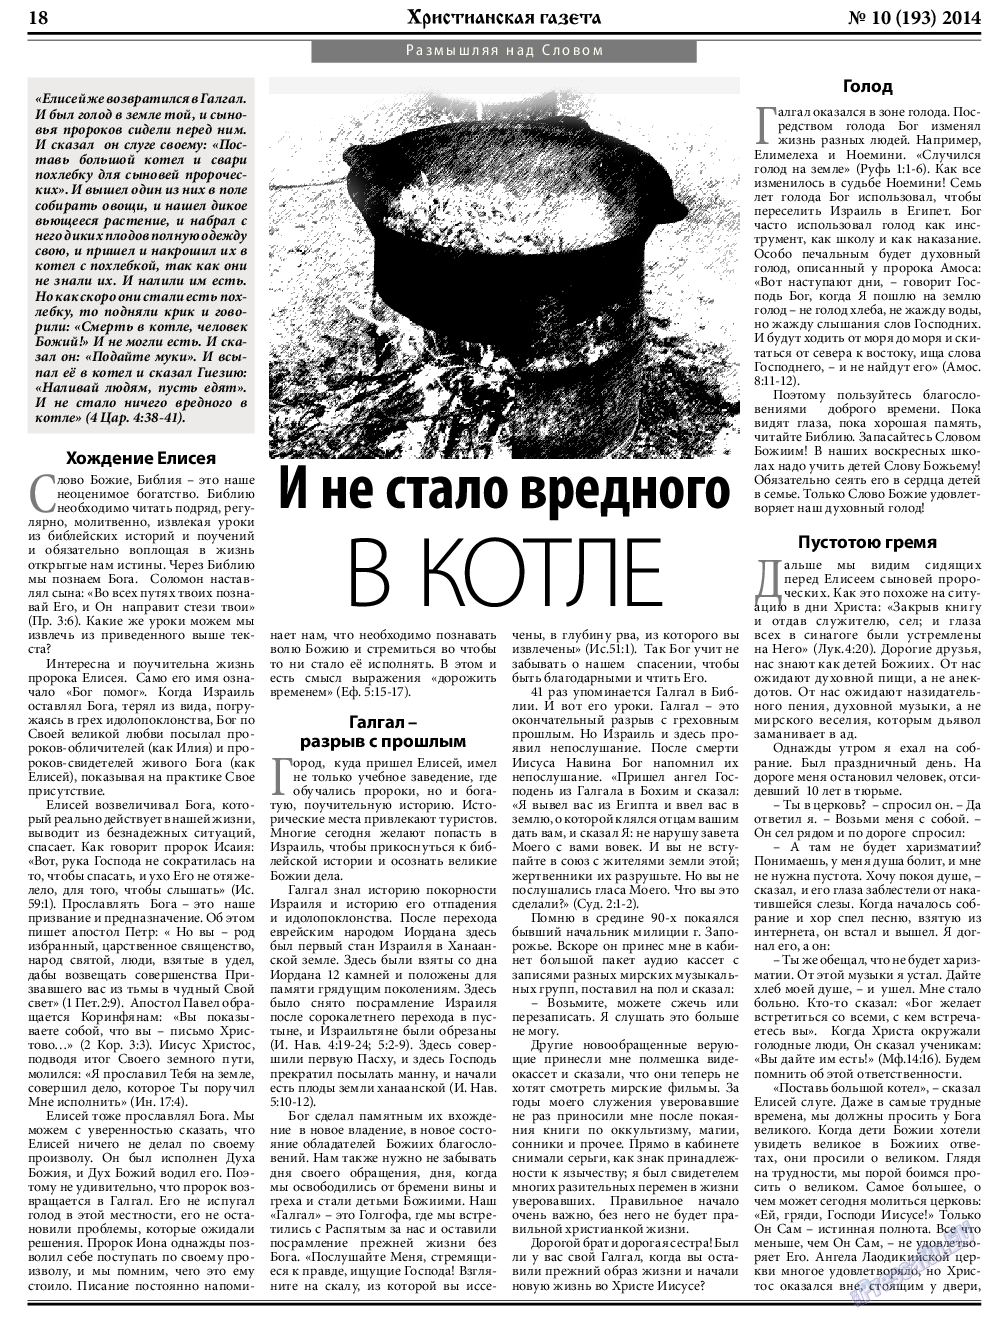 Христианская газета, газета. 2014 №10 стр.26